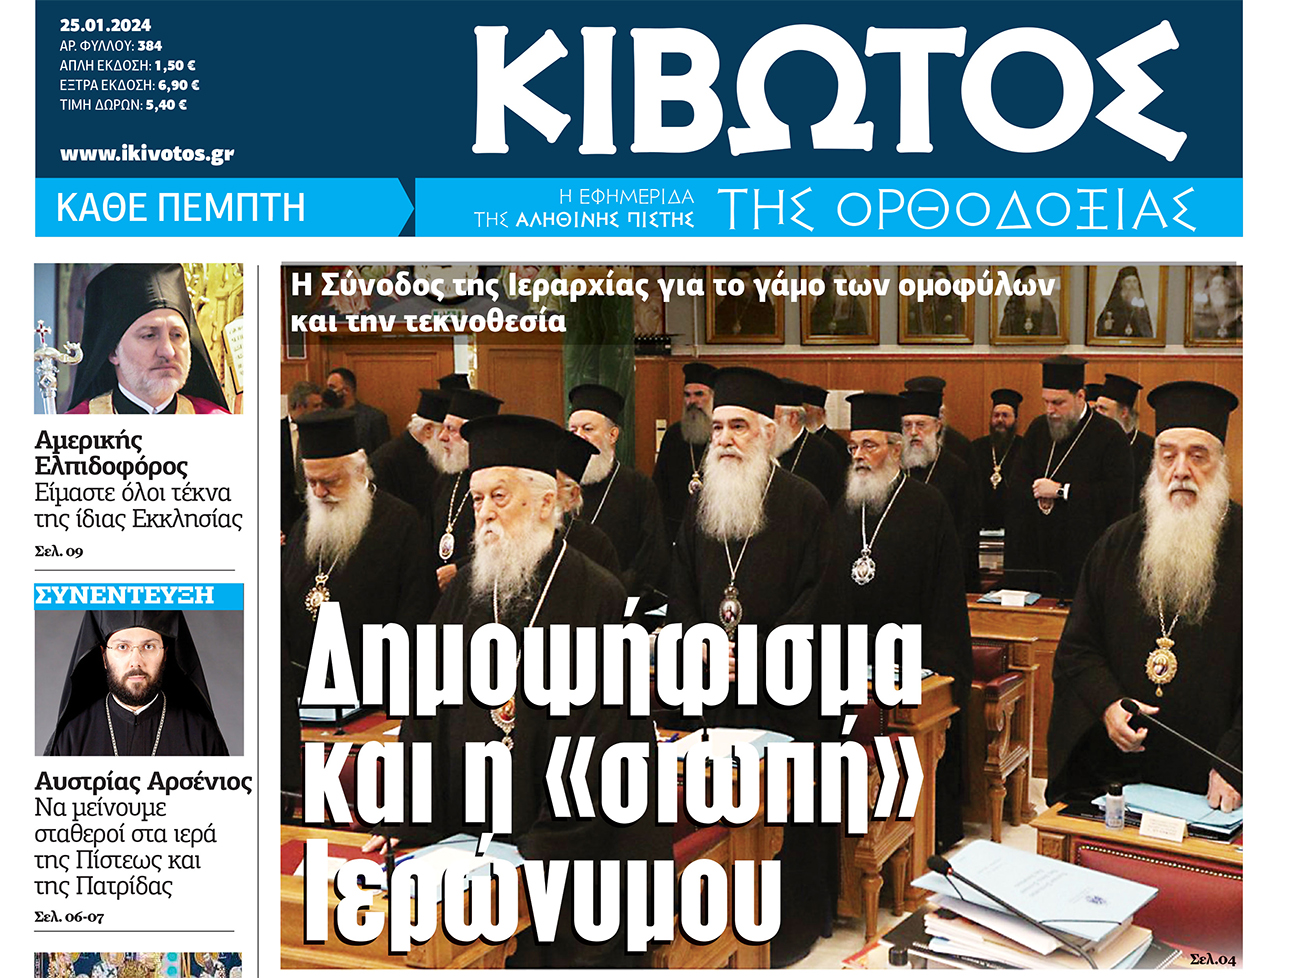 Την Πέμπτη, 25 Ιανουαρίου, κυκλοφορεί το νέο φύλλο της Εφημερίδας «Κιβωτός της Ορθοδοξίας»